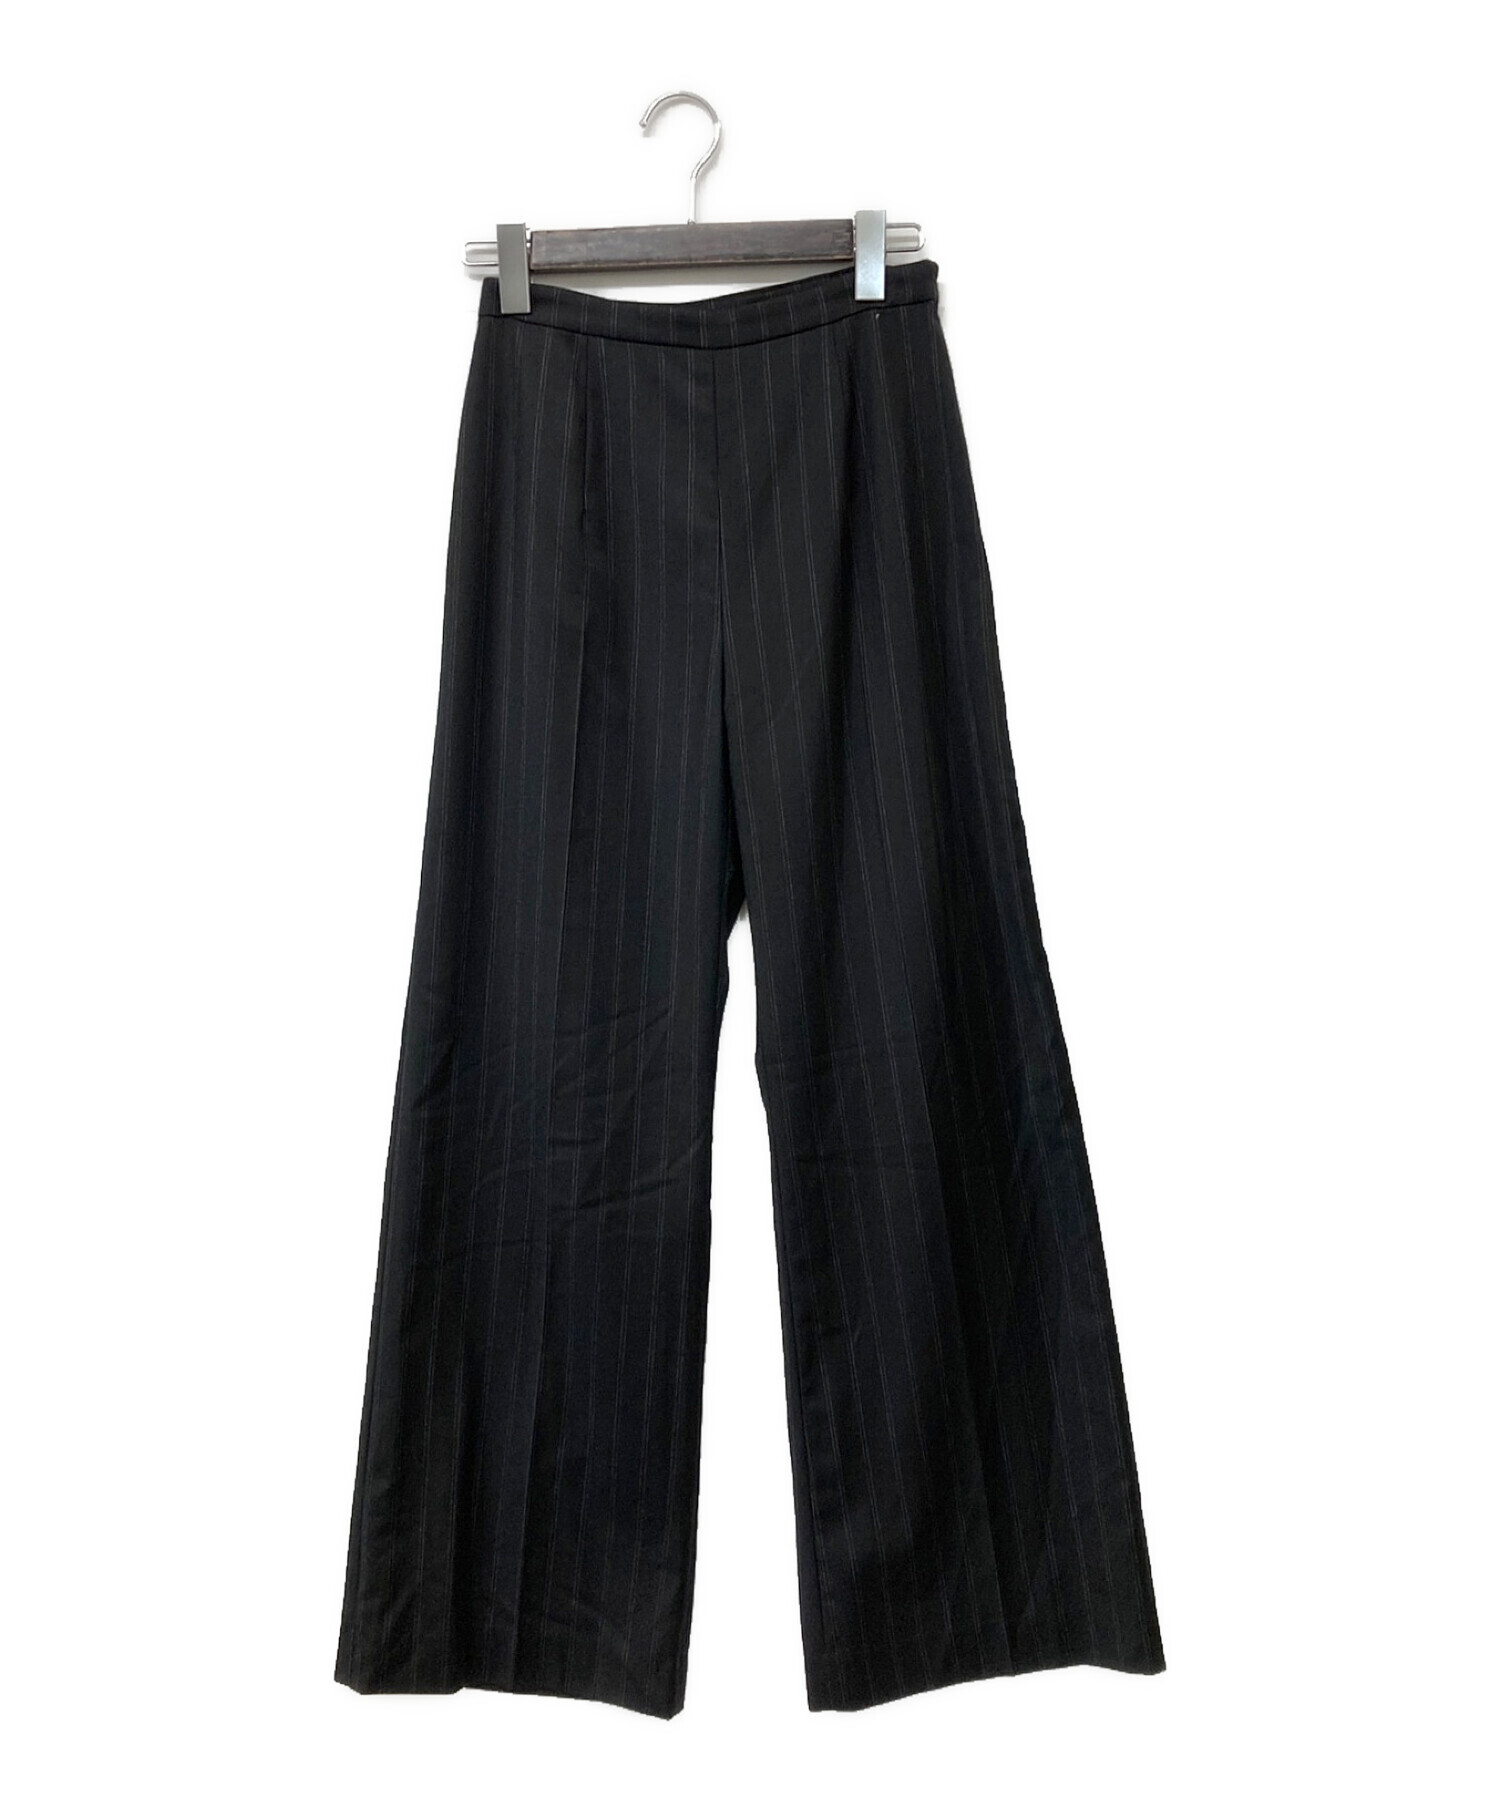 MAISON SPECIAL (メゾンスペシャル) 23AW Chambray Satin Layered Pants レイヤードパンツ ブラック  サイズ:36